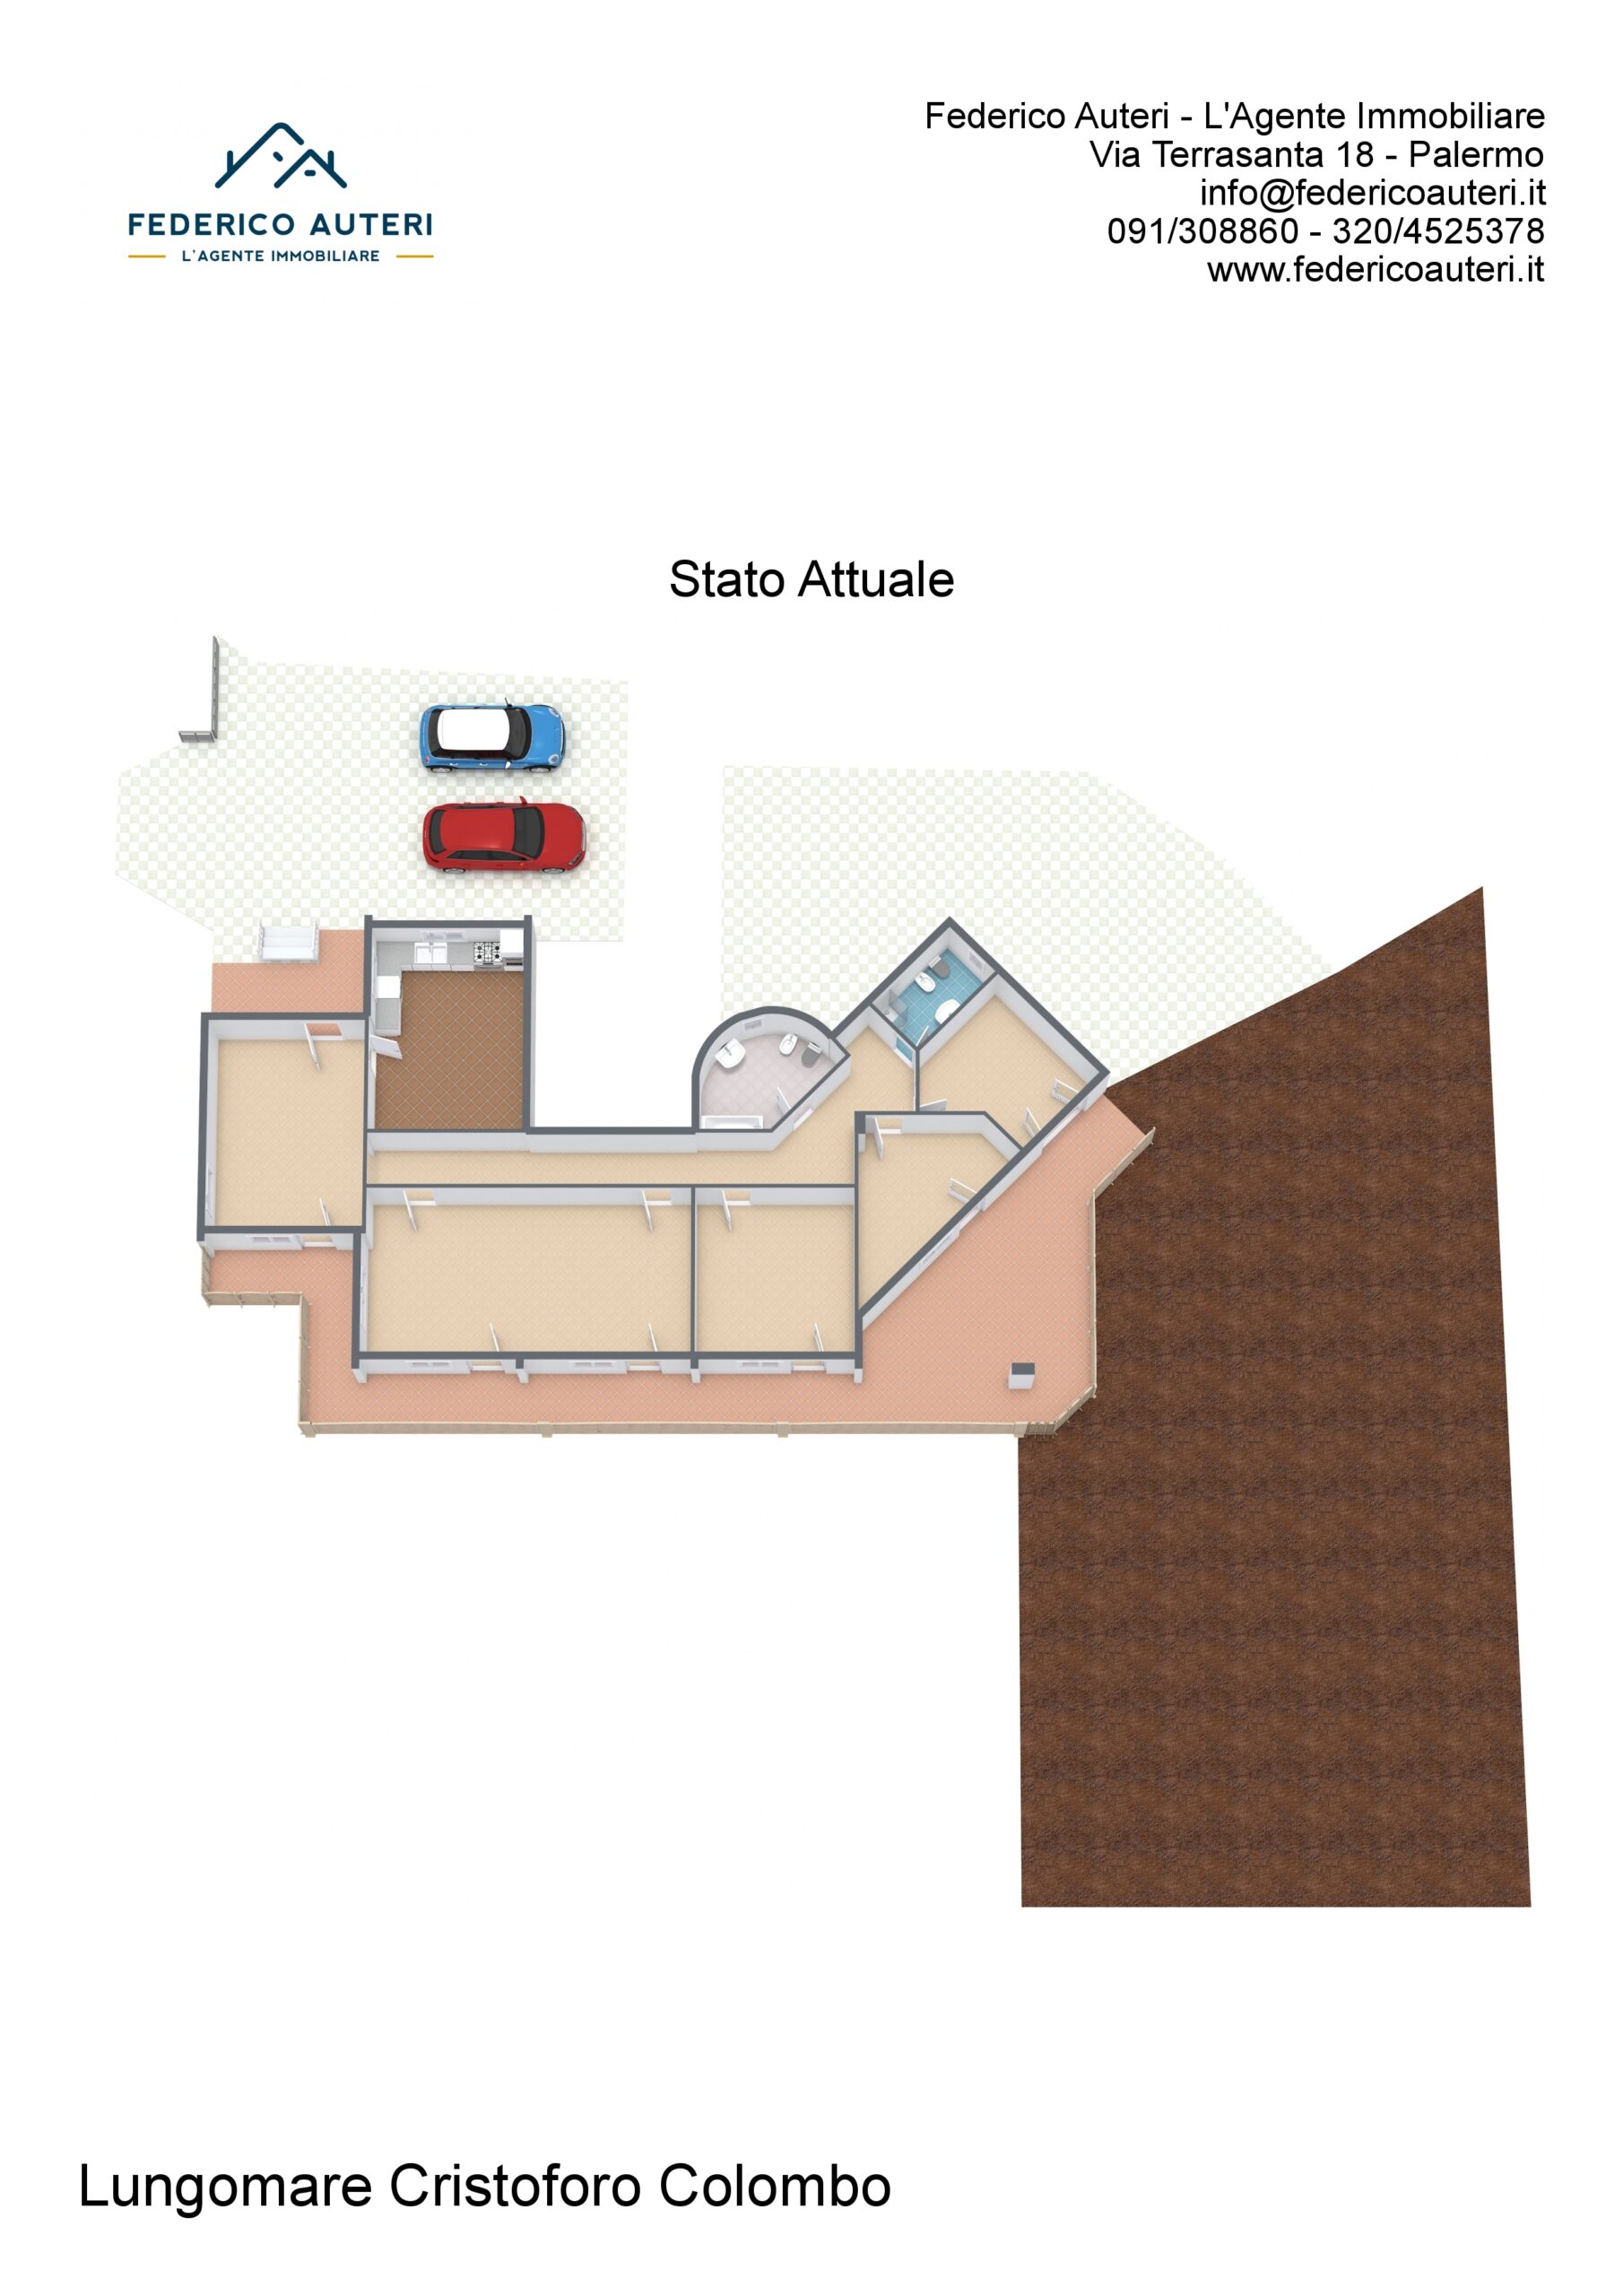 Floorplan letterhead - Lungomare Cristoforo Colombo - Stato Attuale - 3D Floor Plan.jpg